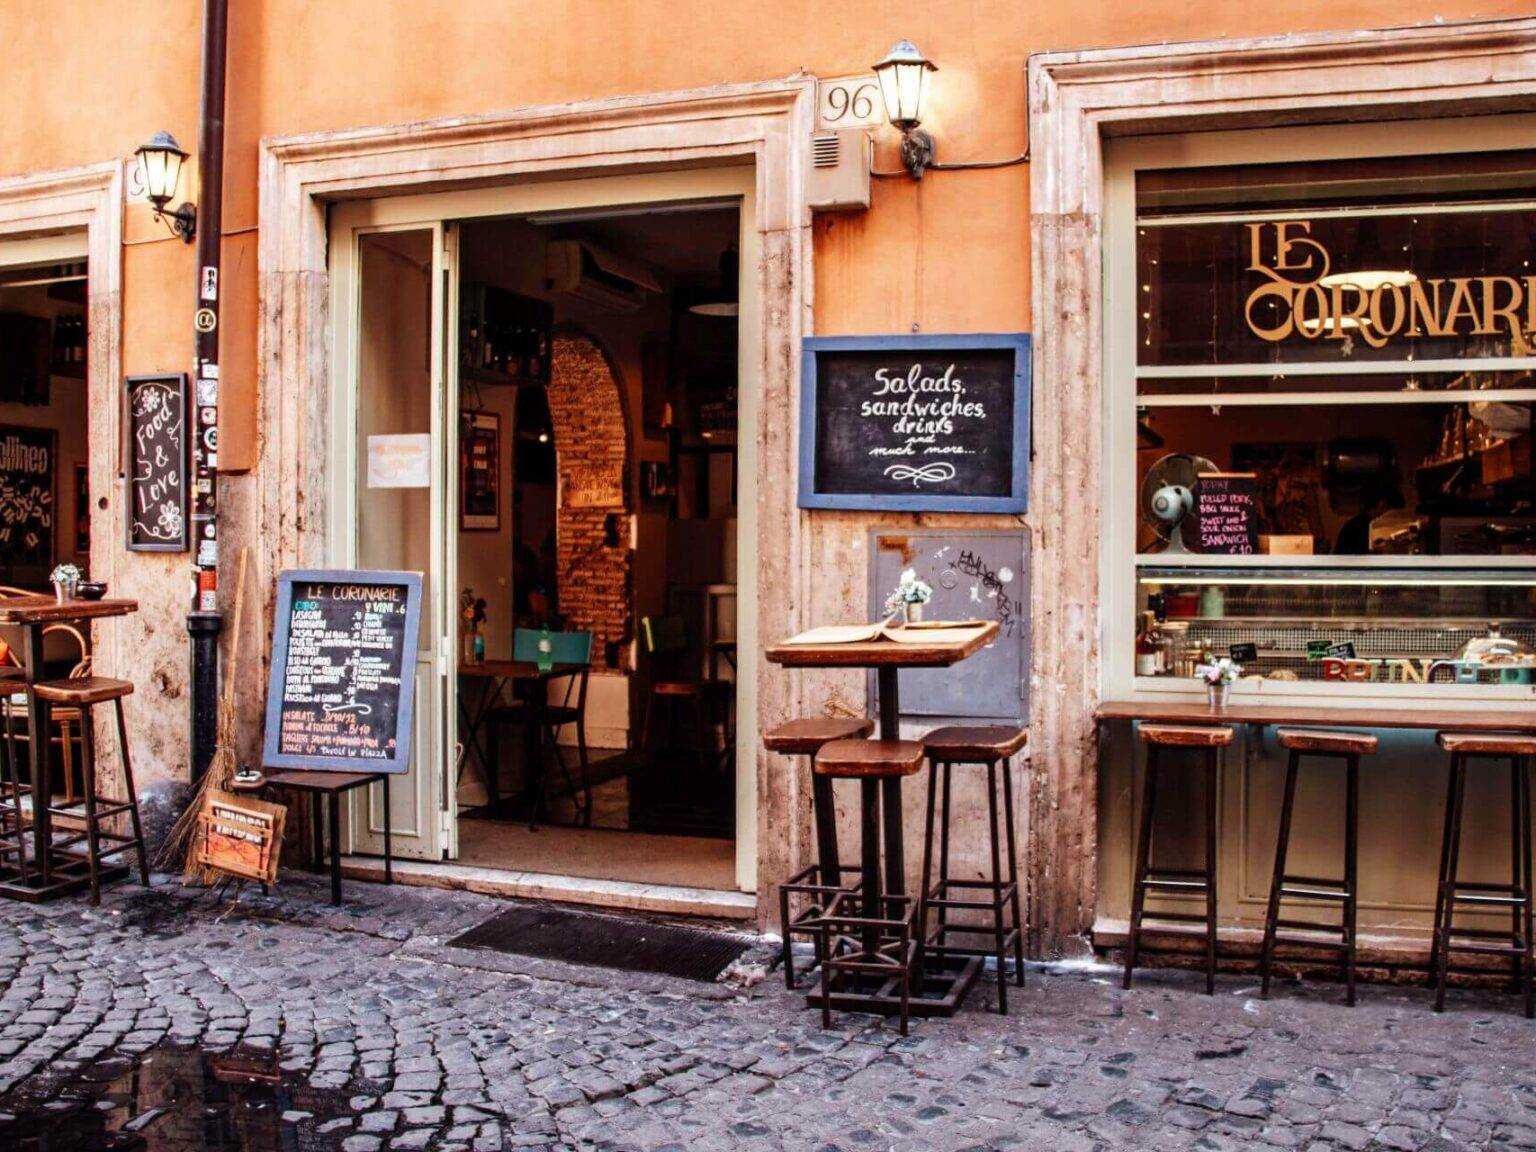 Blick auf das Restaurant Le Coronarie inb Rom mit Hochtischen und Barhockern im Vordergrund.